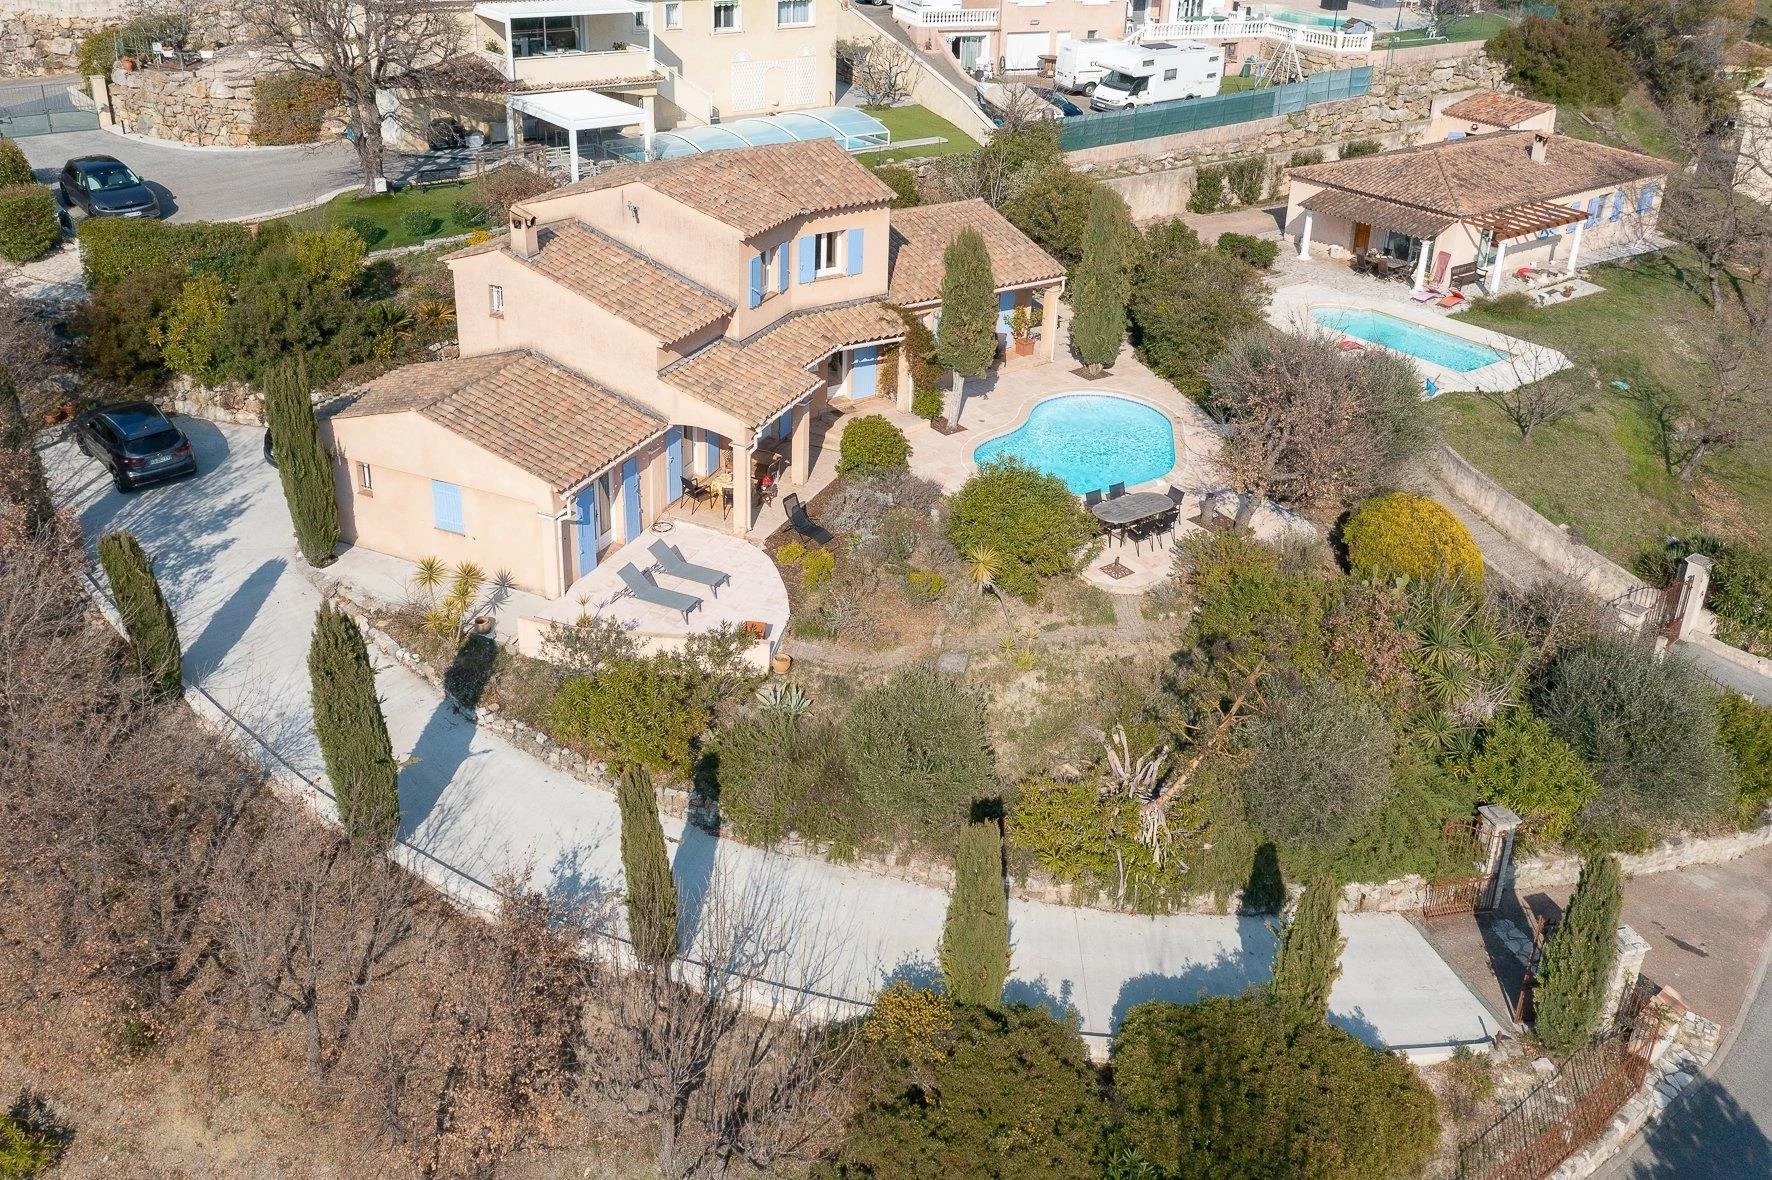 Villa provençale avec piscine et vue panoramique